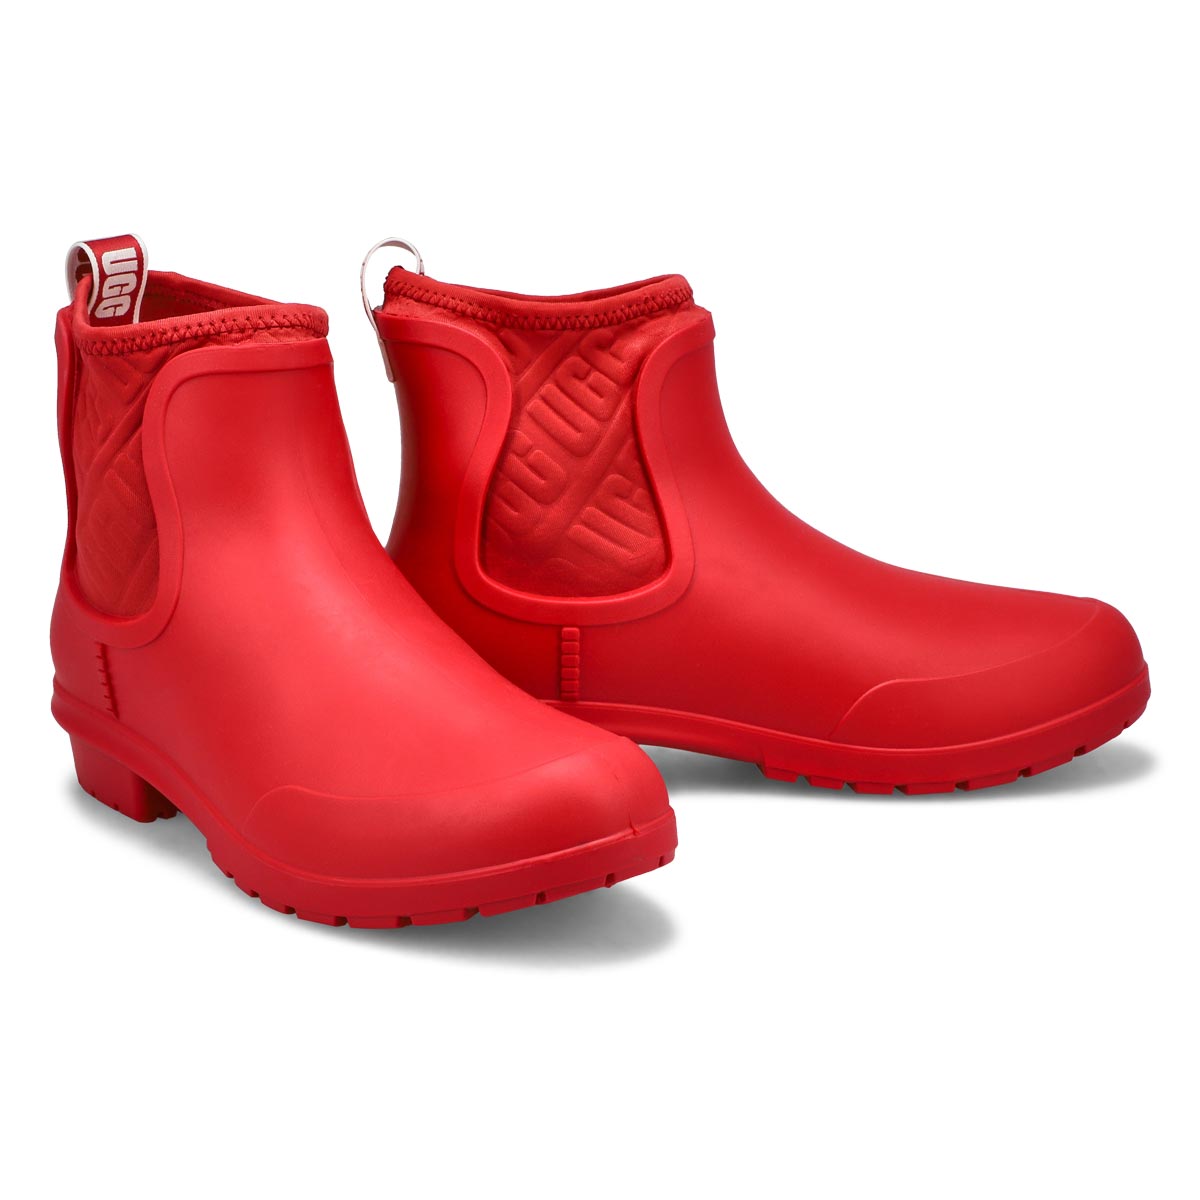 Women's Chevonne Chelsea Rain Boot - Red